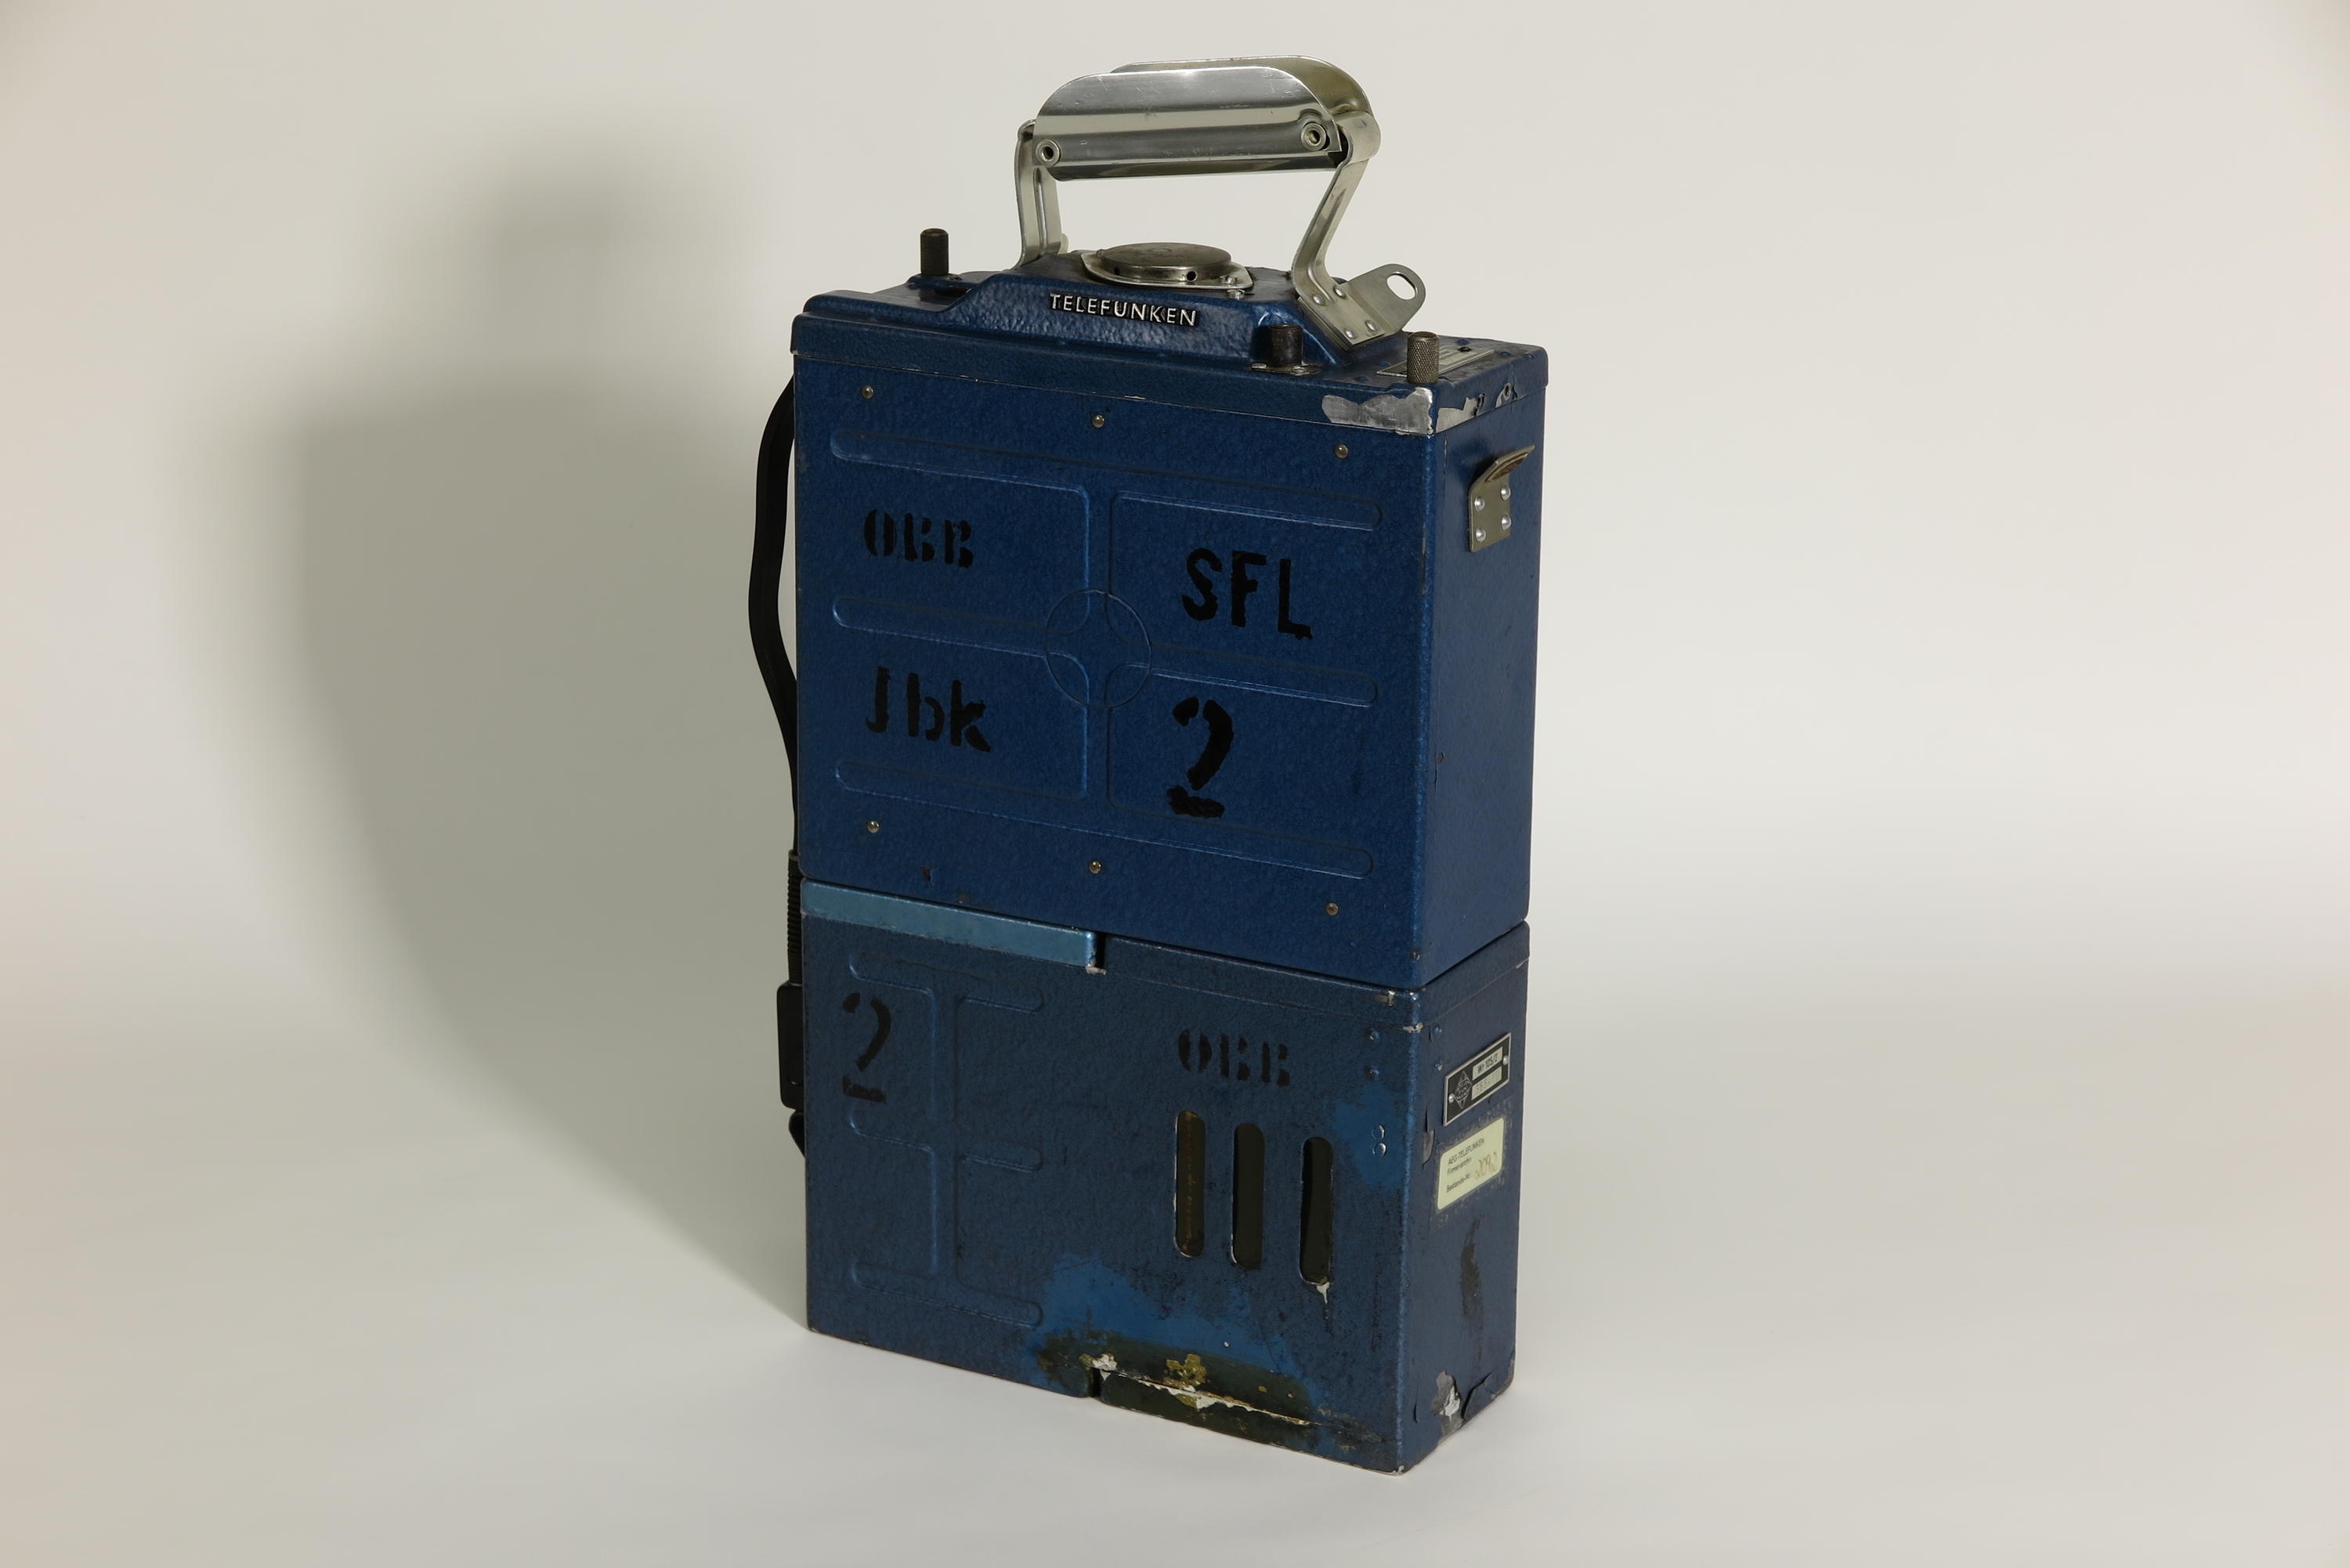 Sende-Empfangsgerät Telefunken SE Stat 106 UKW/2 mit Wechselrichter Telefunken Wr 105/2 (Deutsches Technikmuseum CC BY)